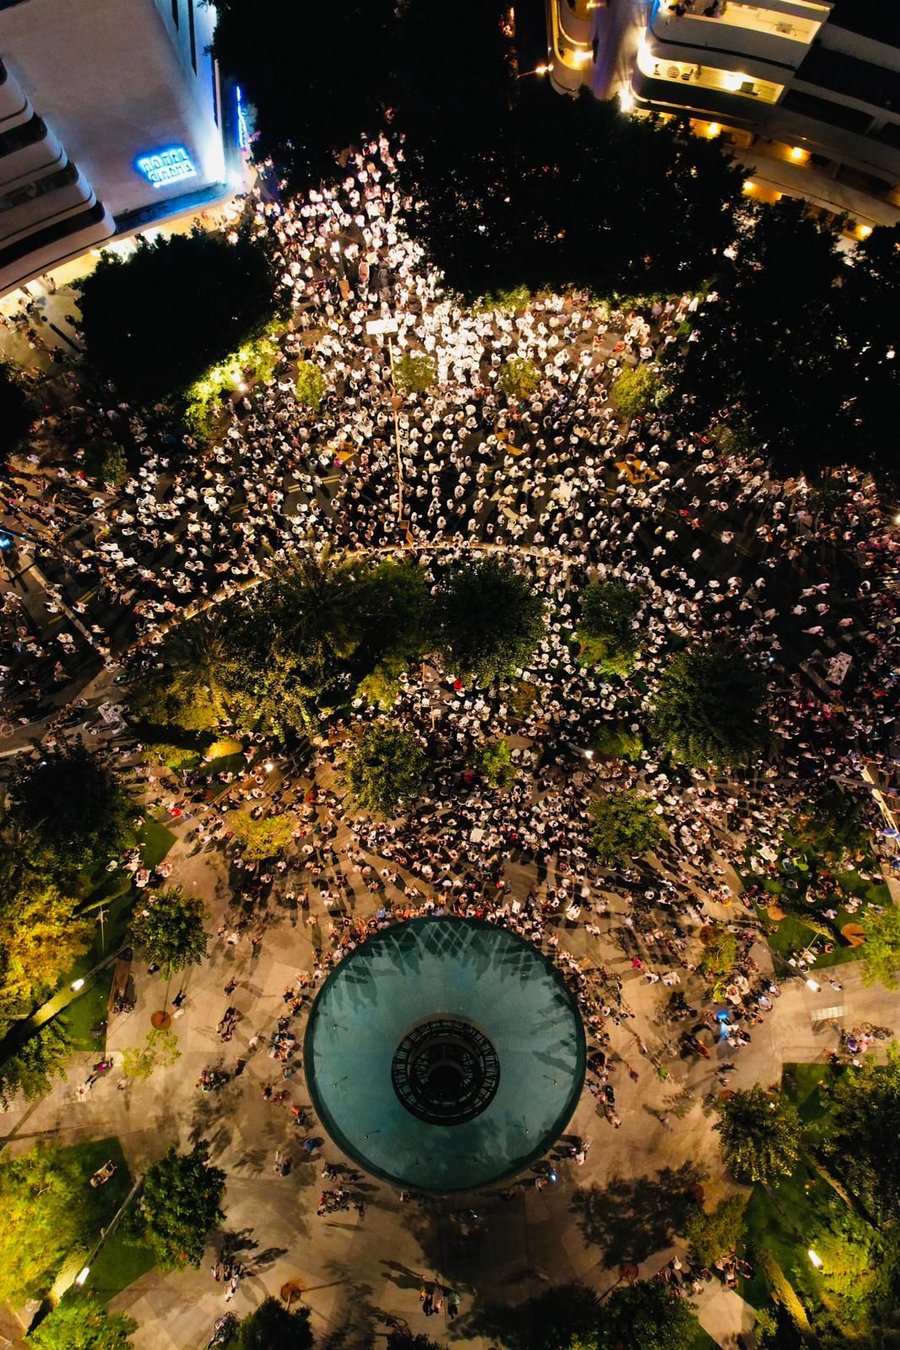 תיעוד מרגש: אלפים בתפילת נעילה בכיכר דיזנגוף בת"א